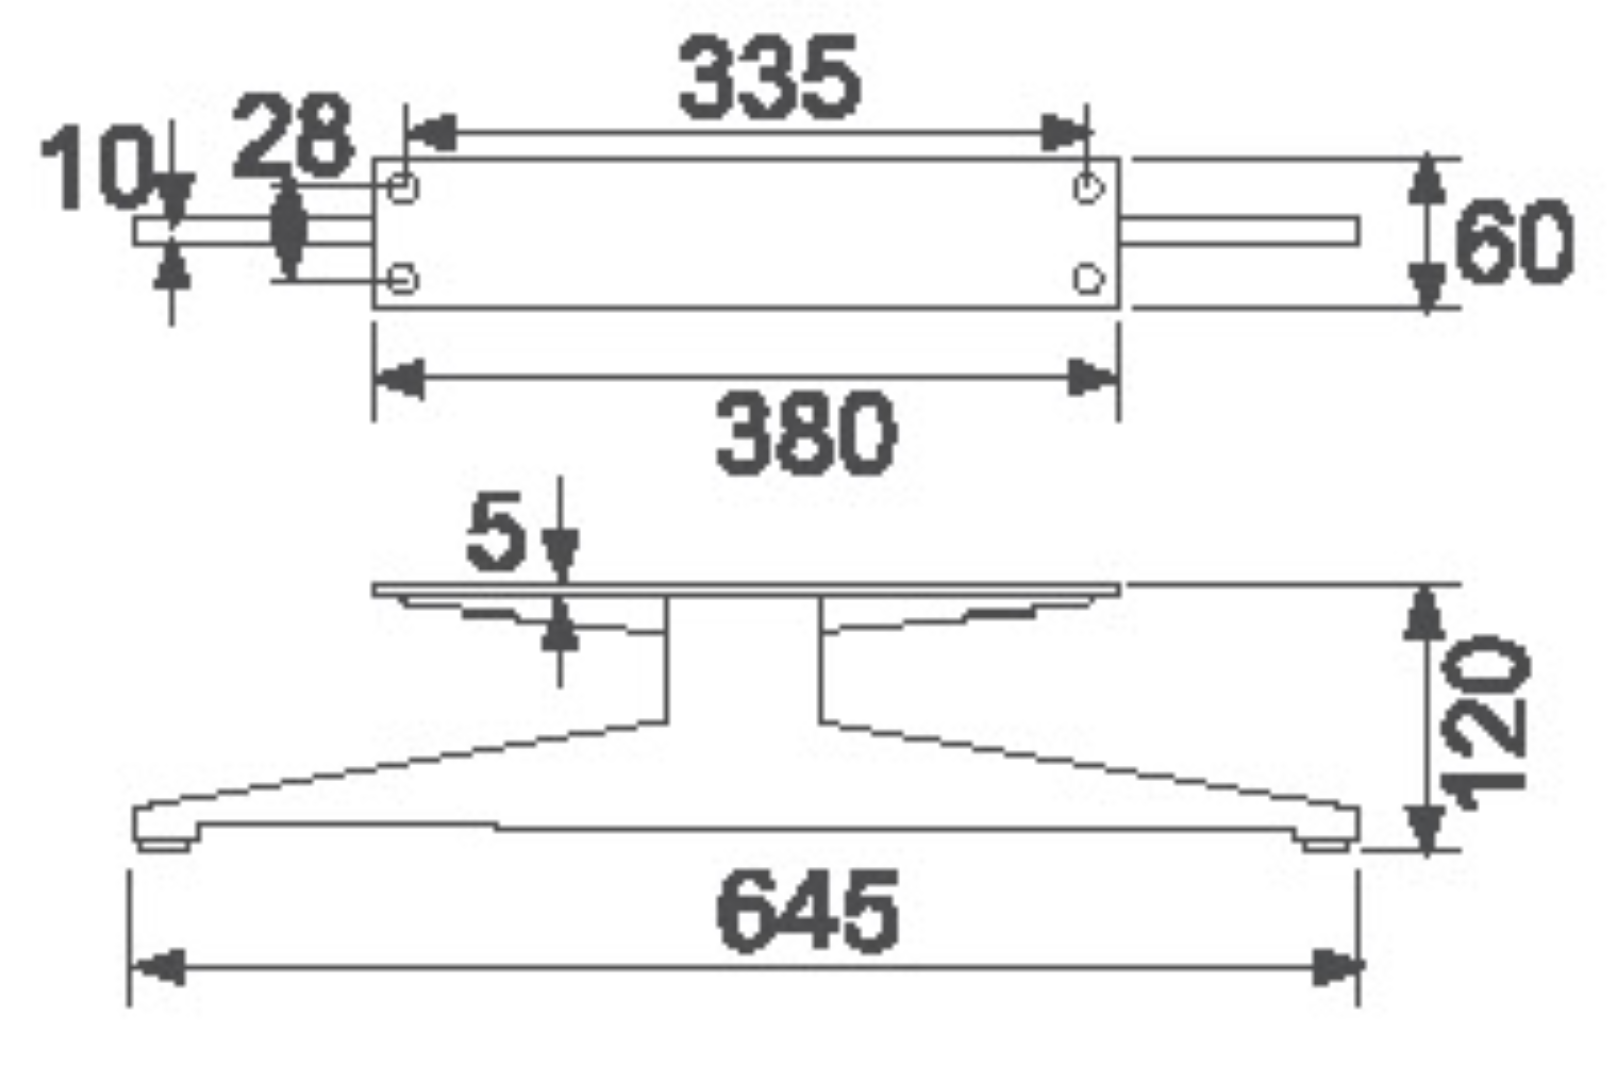 ขาโลหะ Biaode SHB3017 เครื่องเชื่อมอัตโนมัติสำหรับโซฟา ขาโลหะ/SHB3017 (H: 4.7 นิ้ว) รูปเด่น